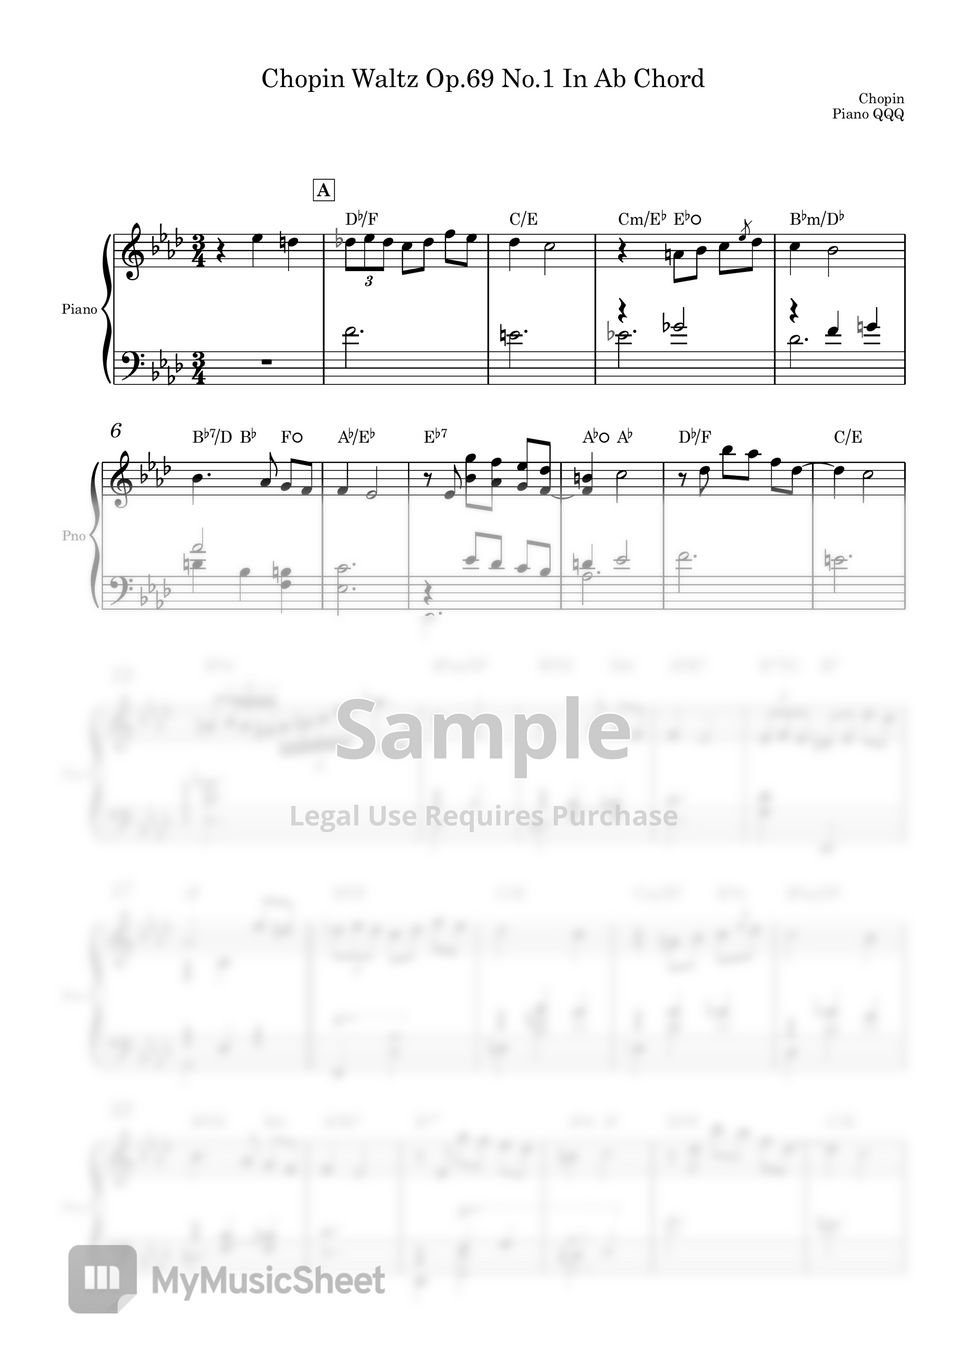 Chopin - Chopin Waltz Op.69 No.1 (A solo piano score) by Piano QQQ